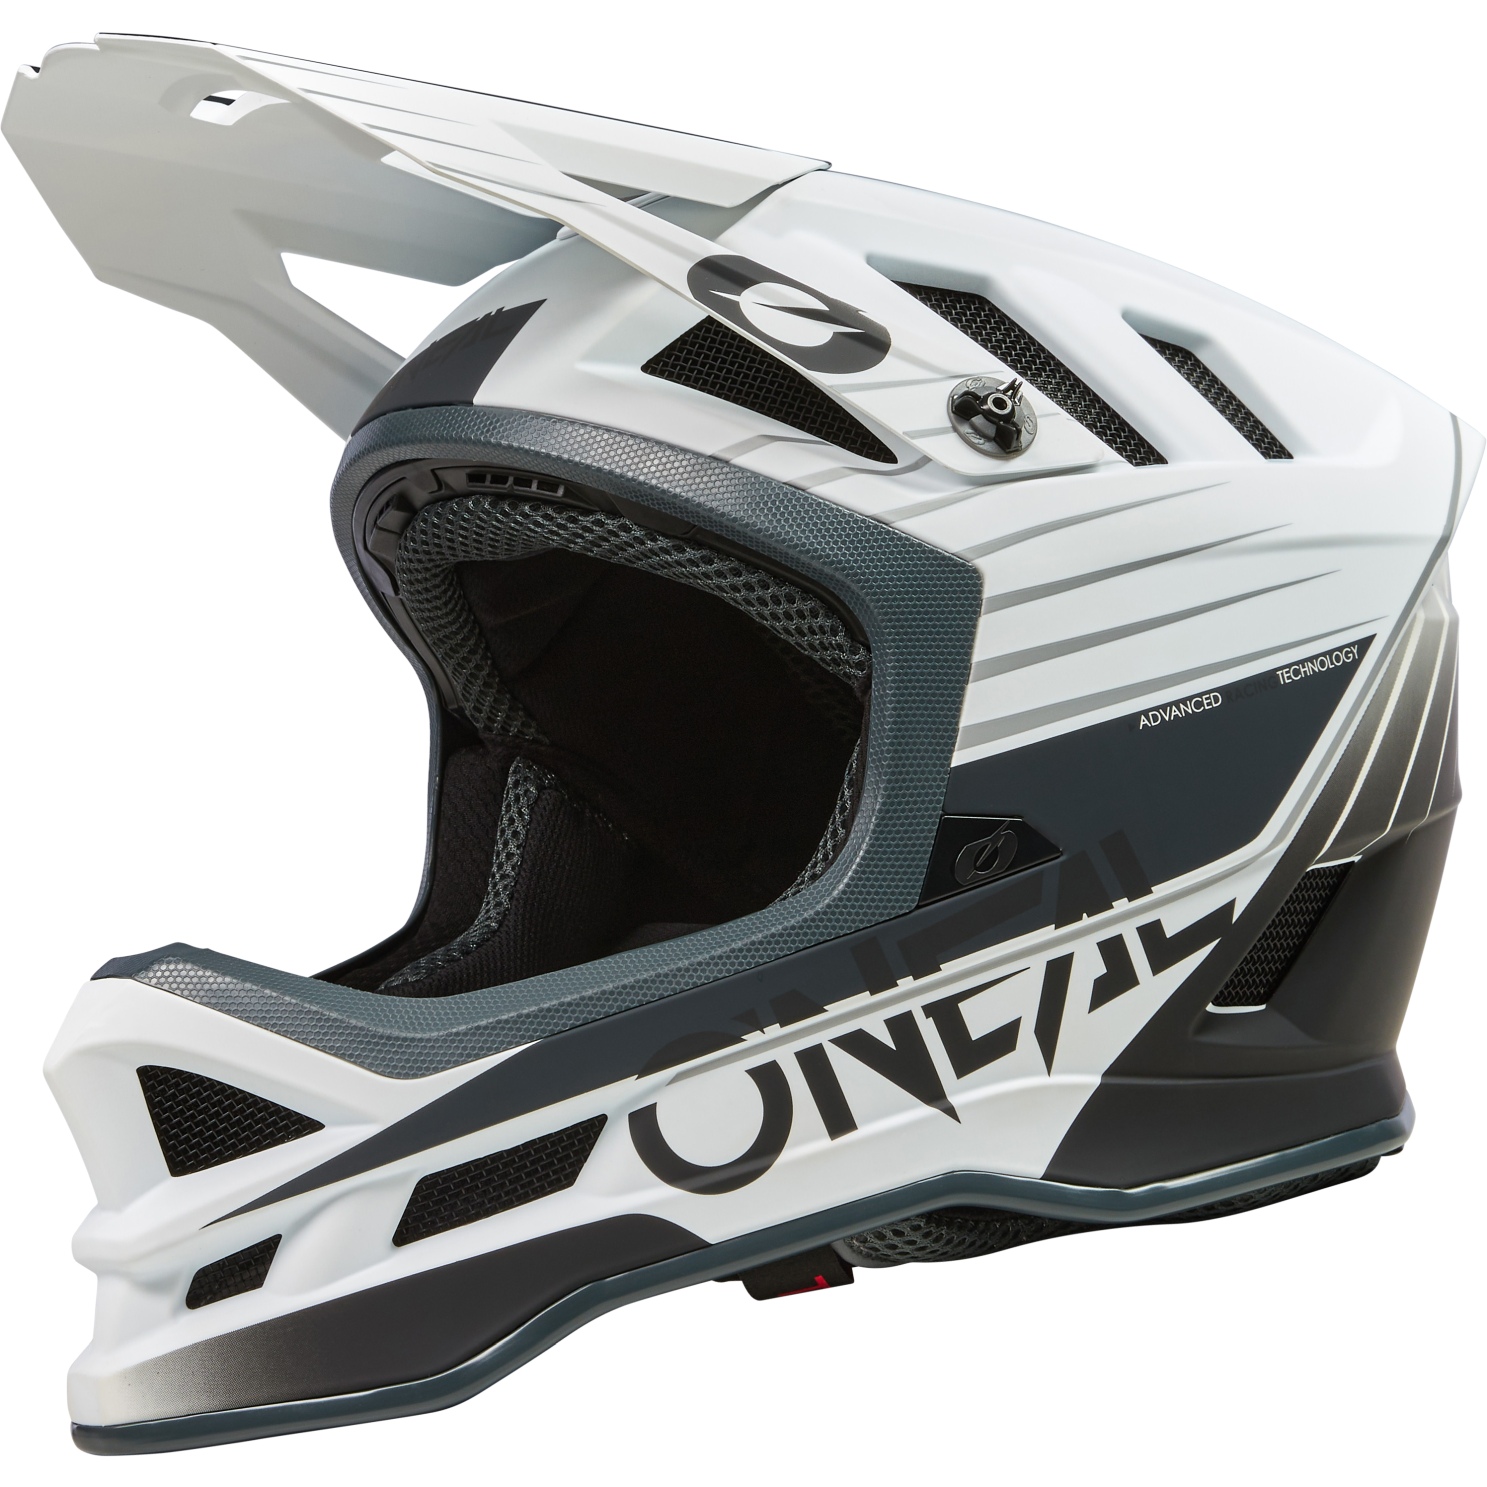 Image of O'Neal Blade Polyacrylite Helmet - DELTA V.23 white/gray